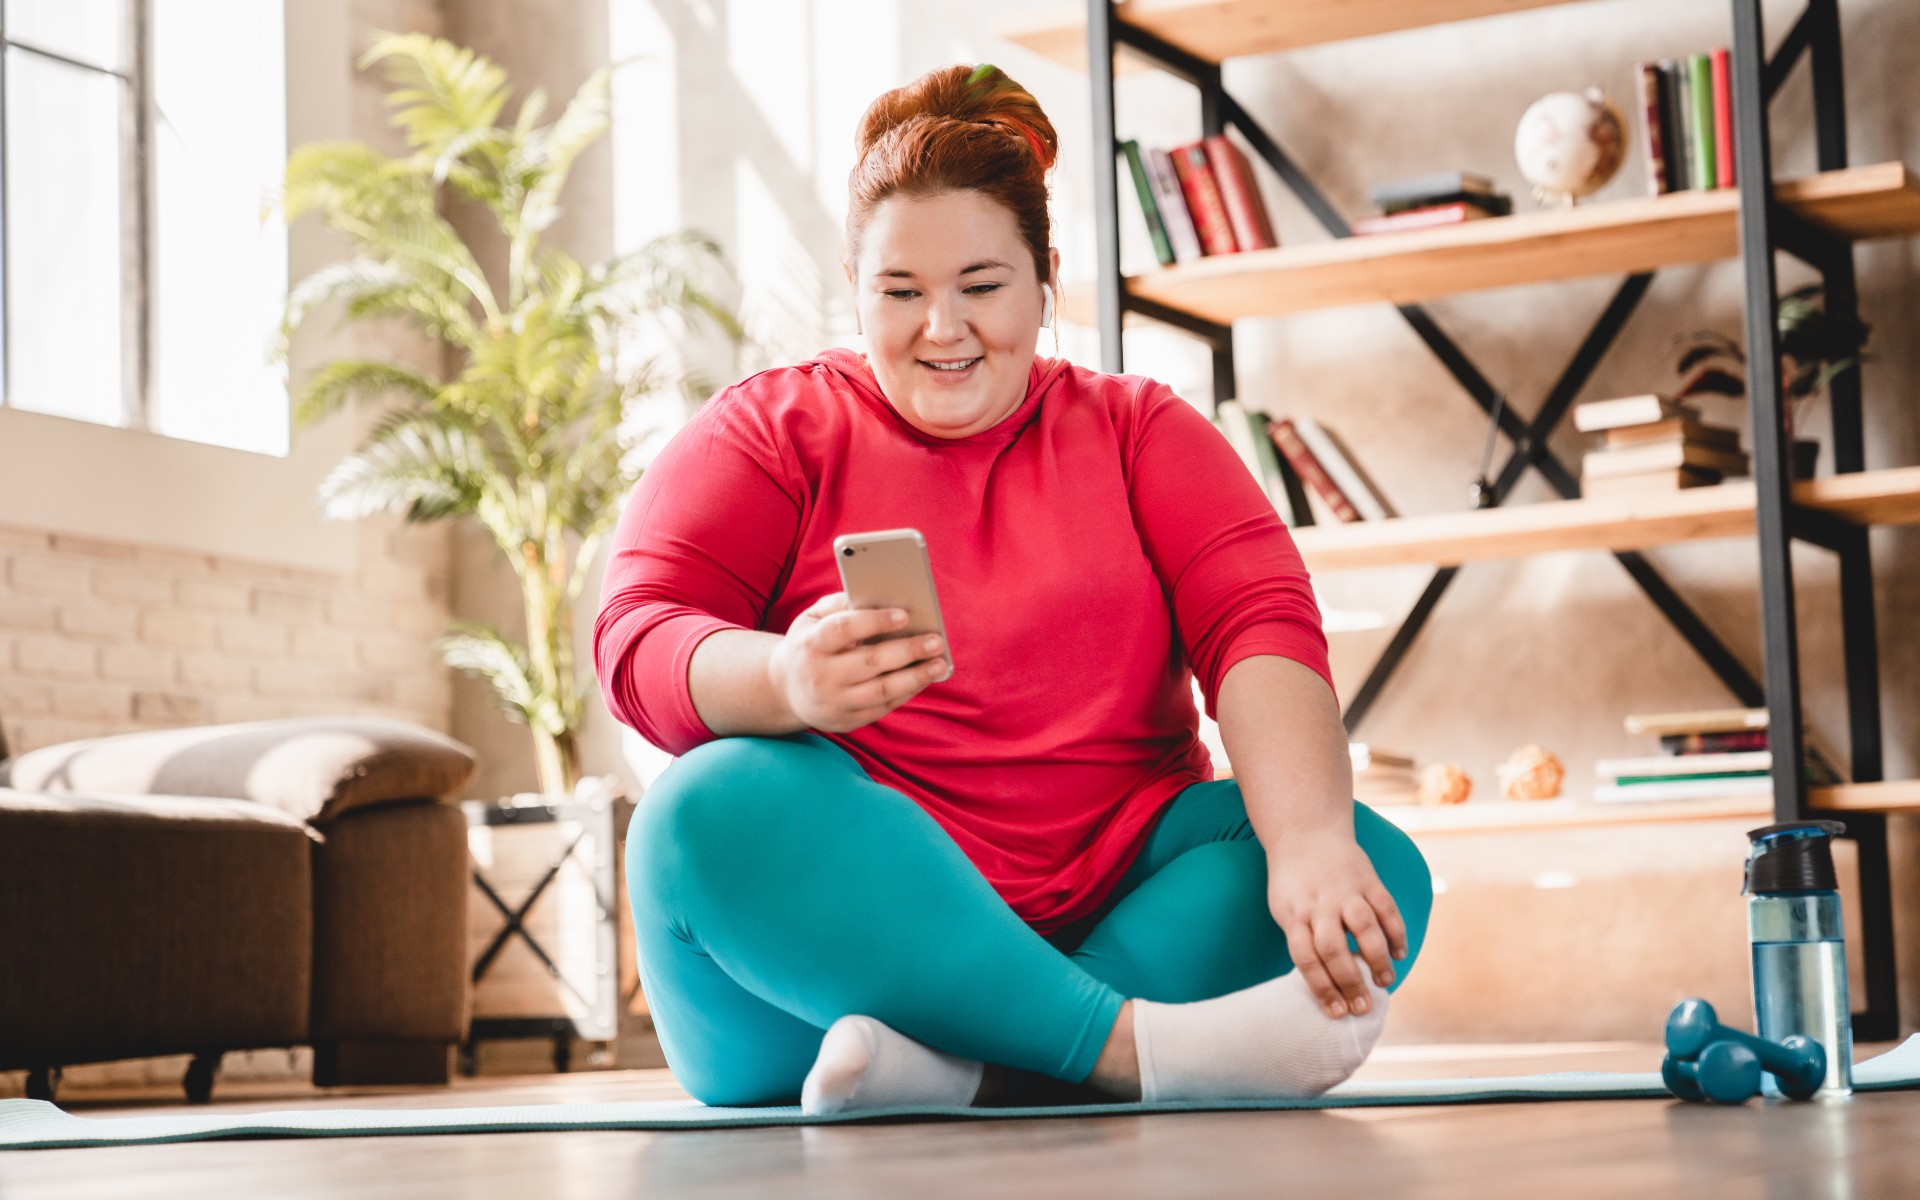 Übergewichtige junge Frau auf Yogamatte, lächelnd mit Handy